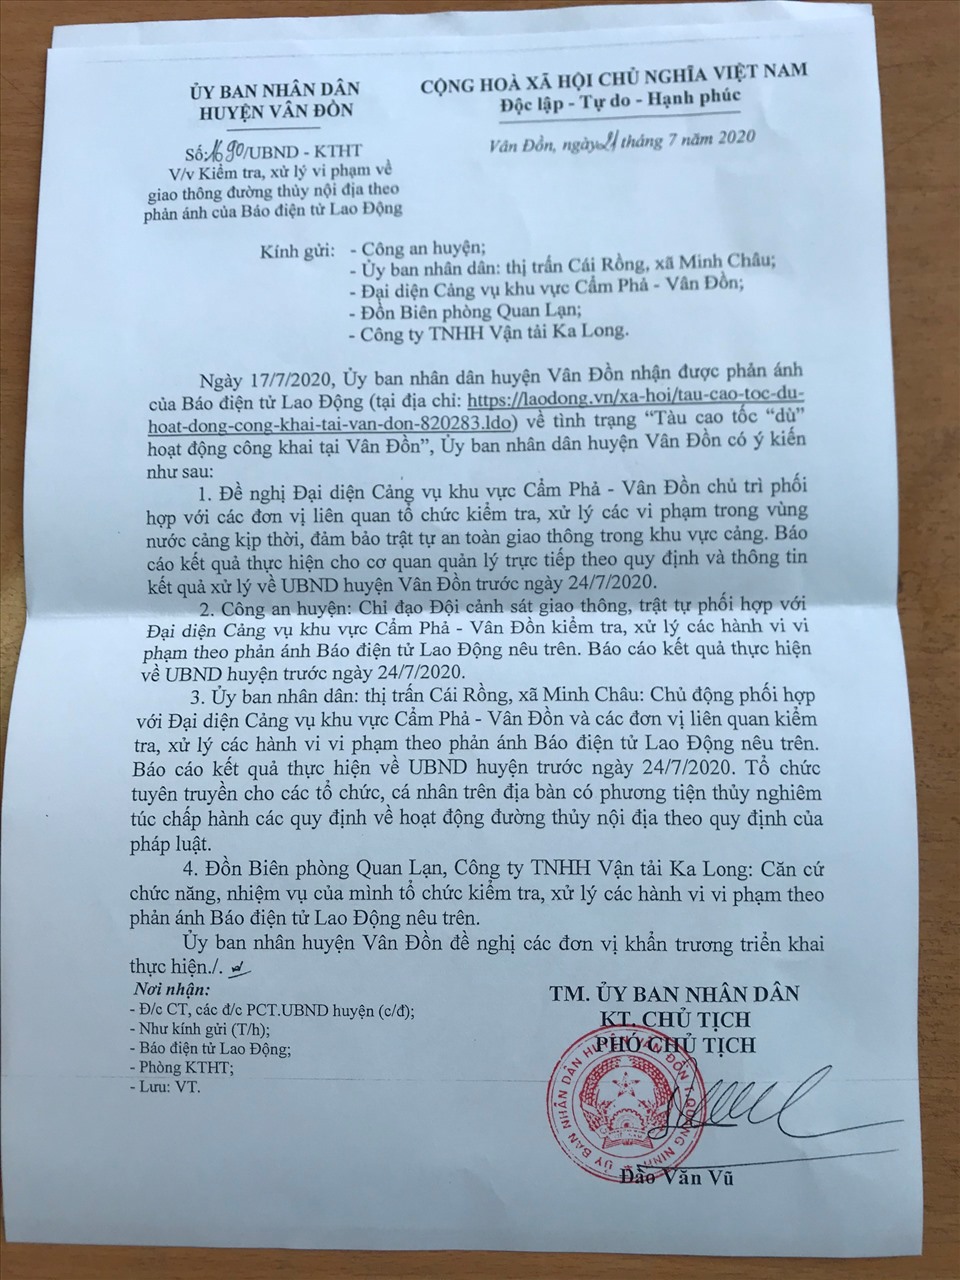 Công văn của UBND huyện Vân Đồn yêu cầu các cơ quan của huyện phối hợp với các đơn vị liên quan xem xét, xử lý các tàu hoạt động “chui“. Ảnh: Nguyễn Hùng